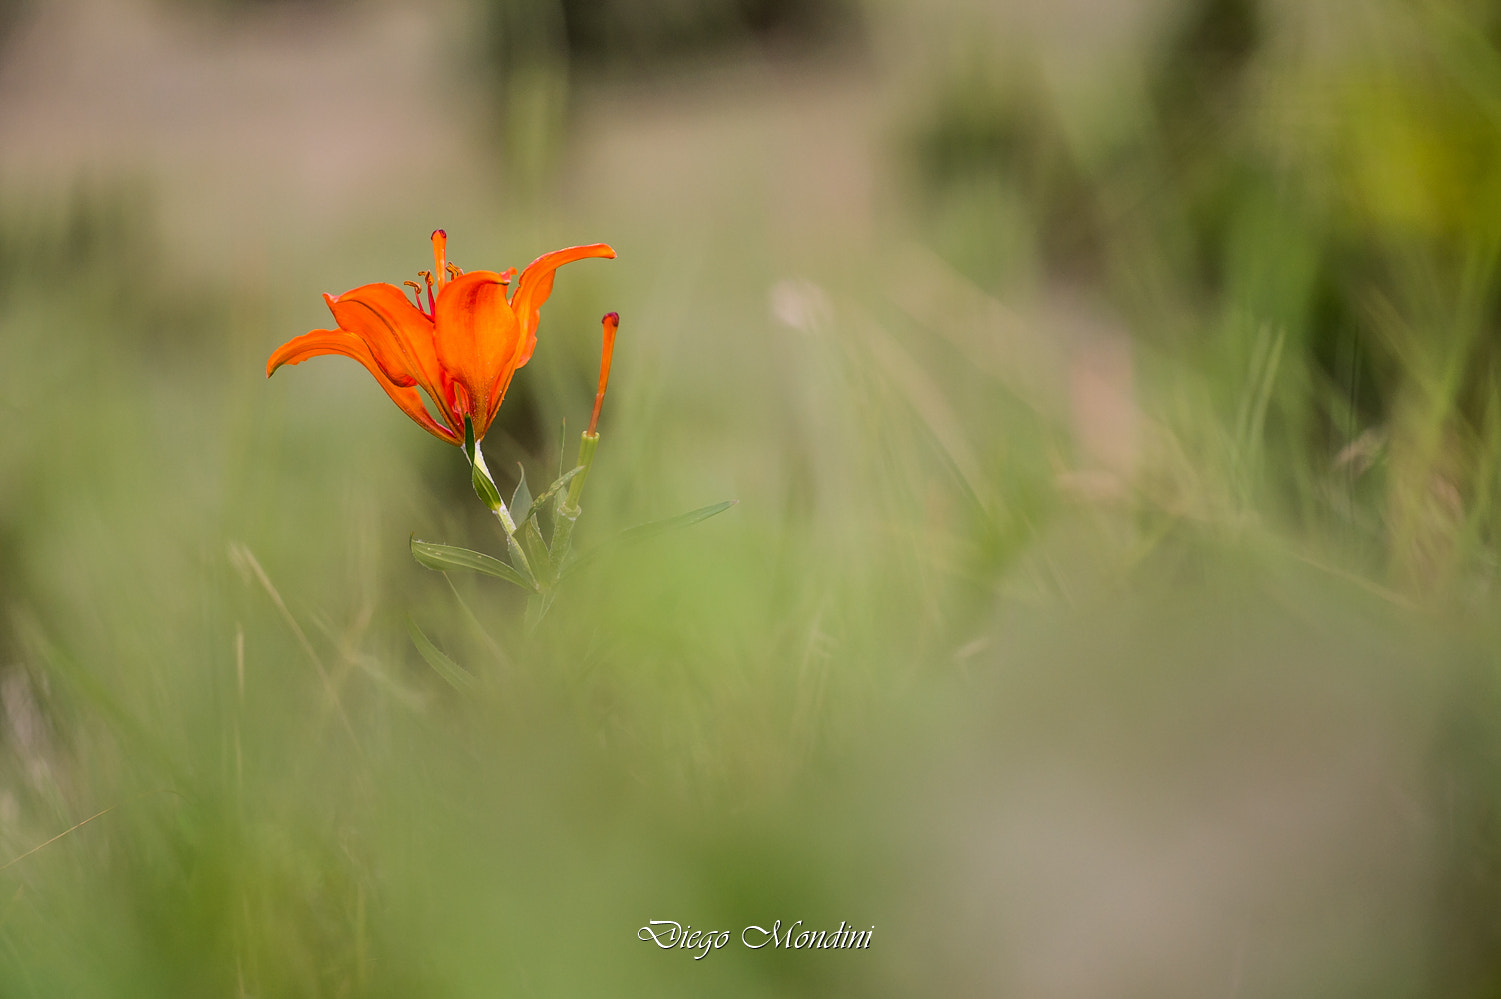 Nikon D4 sample photo. Il grande fiore arancione di montagna photography